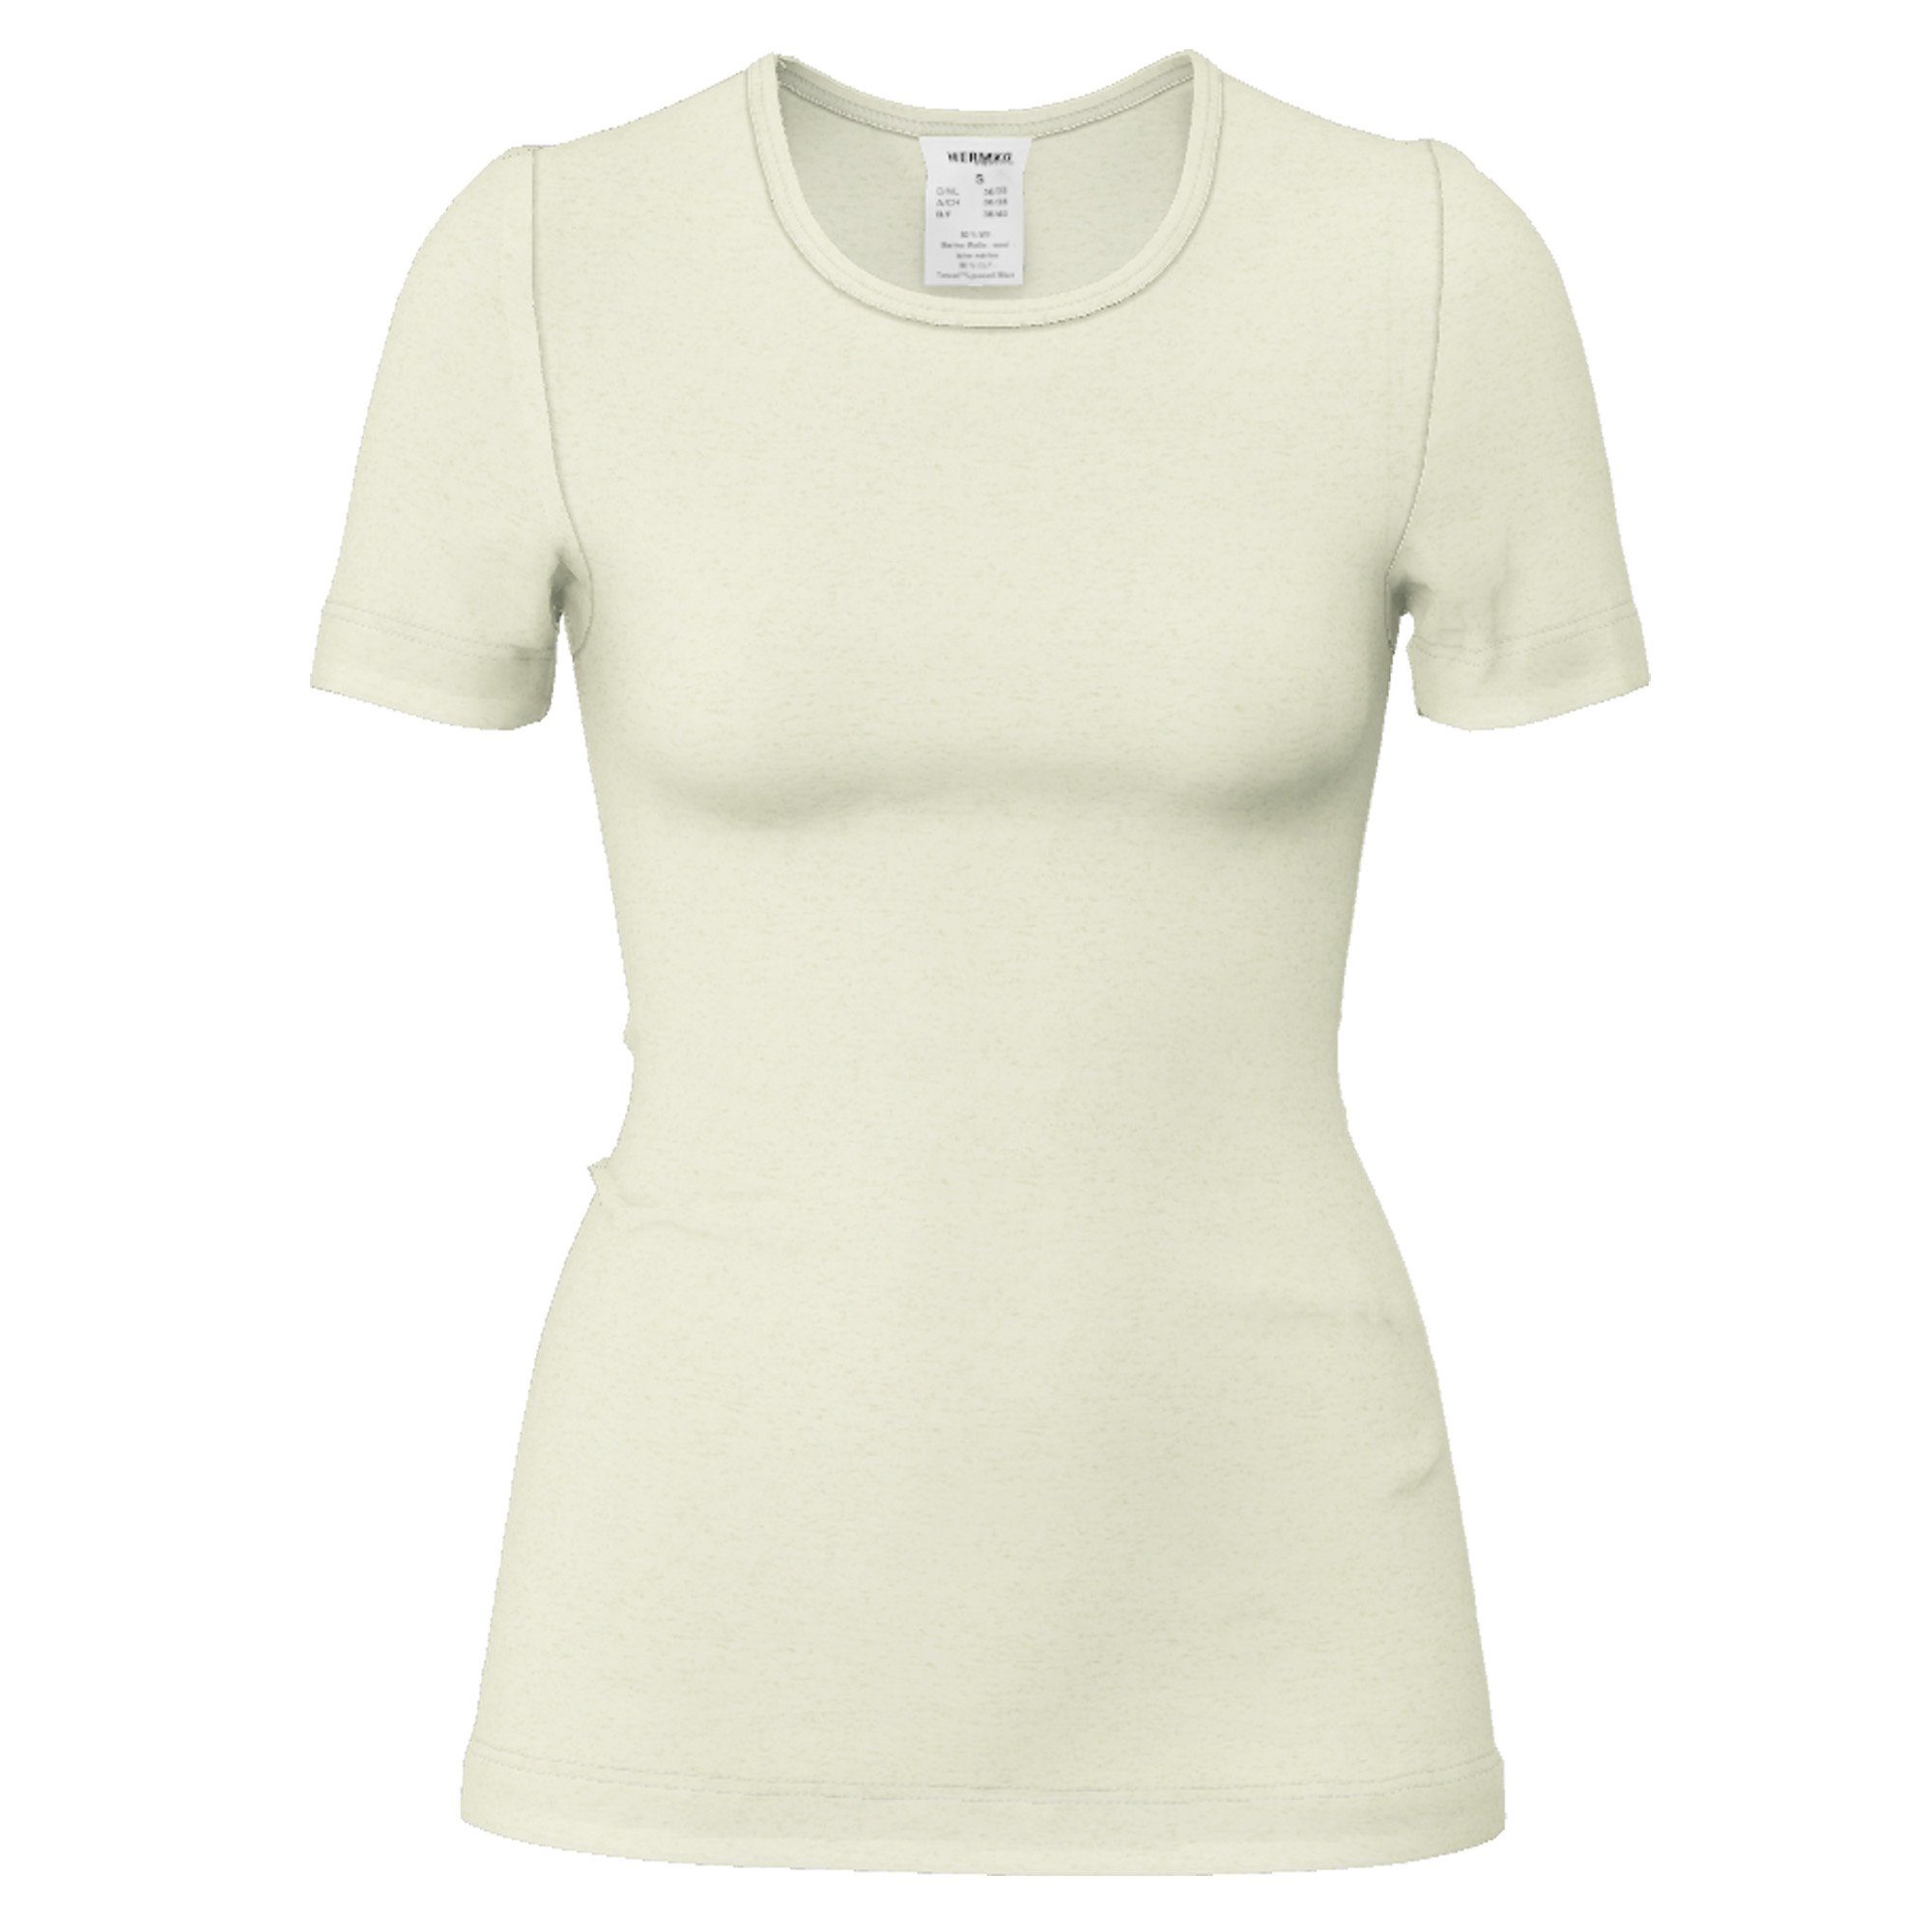 HERMKO Unterhemd 40800 Damen kurzarm Unterhemd mit Rundhals-Ausschnitt aus Wolle/Tencel